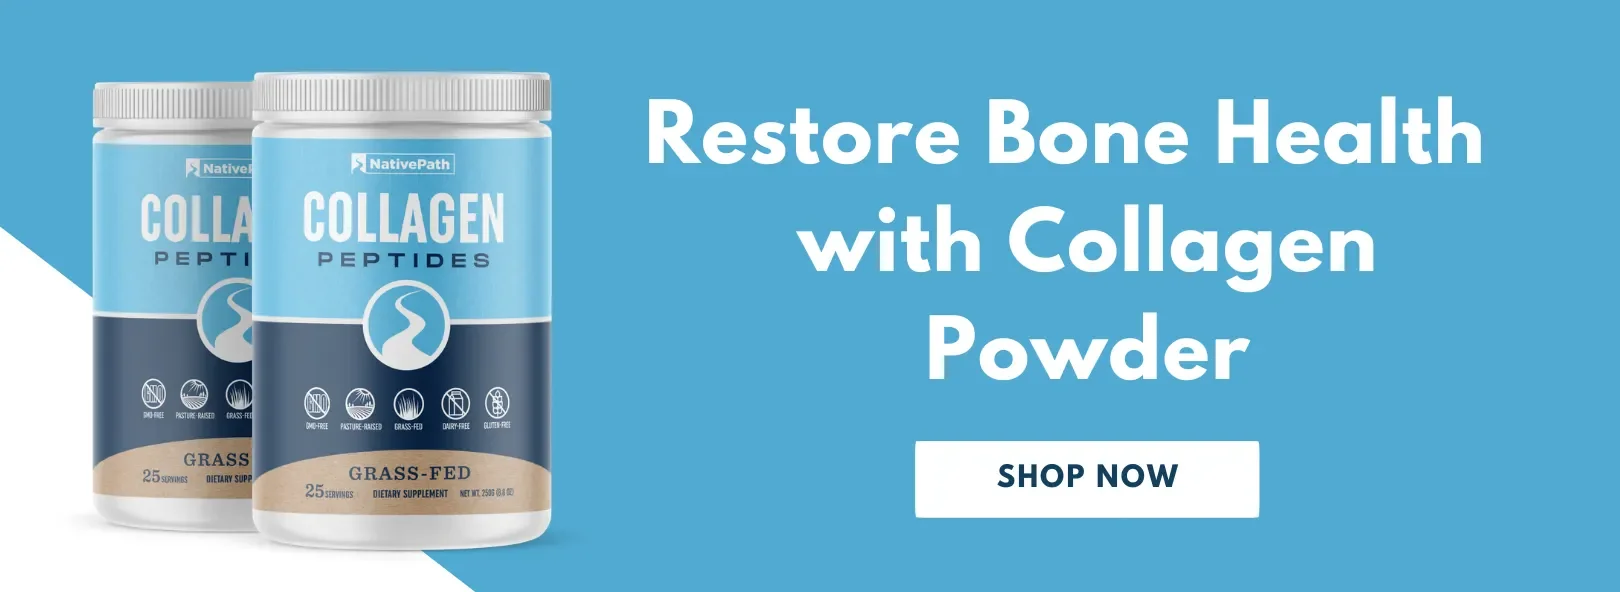 Restore Bone Health with NativePath Collagen Powder